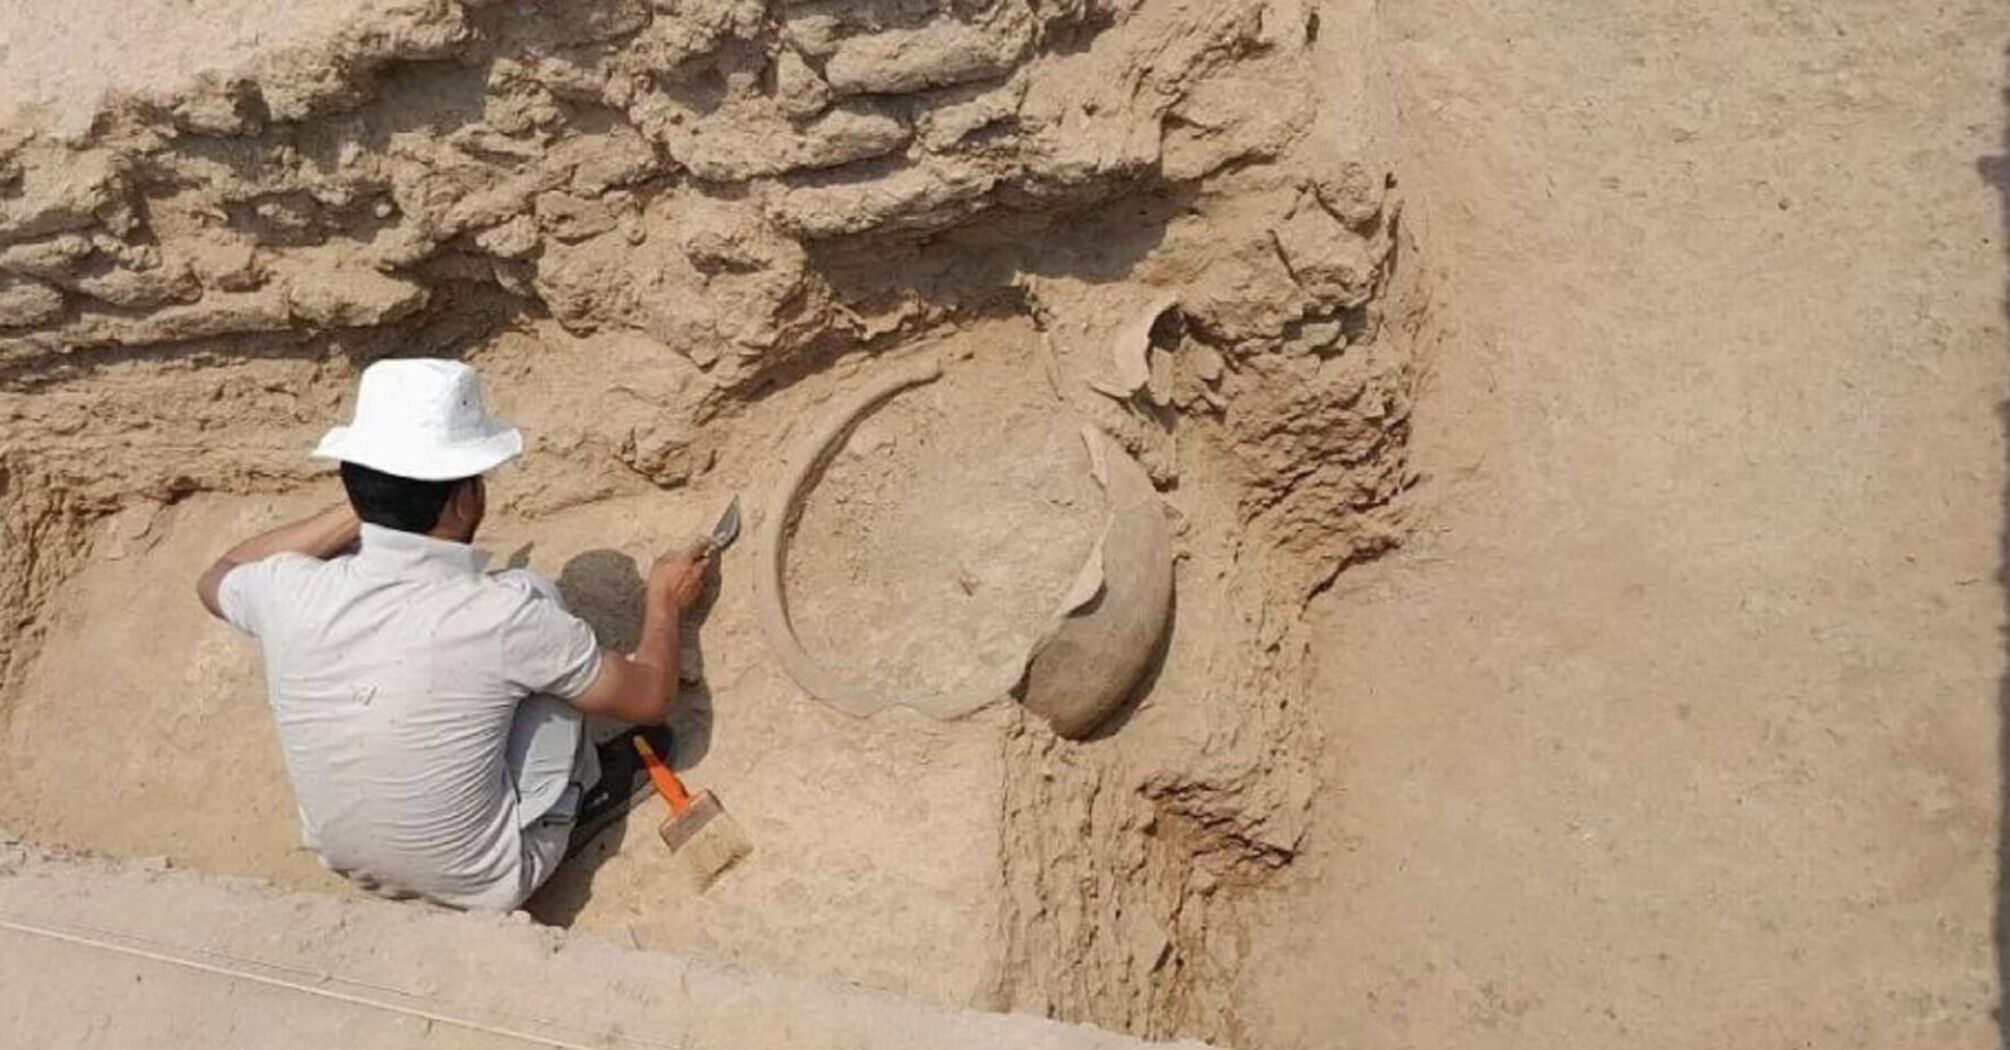 Ювелирное мастерство сквозь тысячелетия: в Индии раскопали фабрику возрастом 5000 лет (фото)